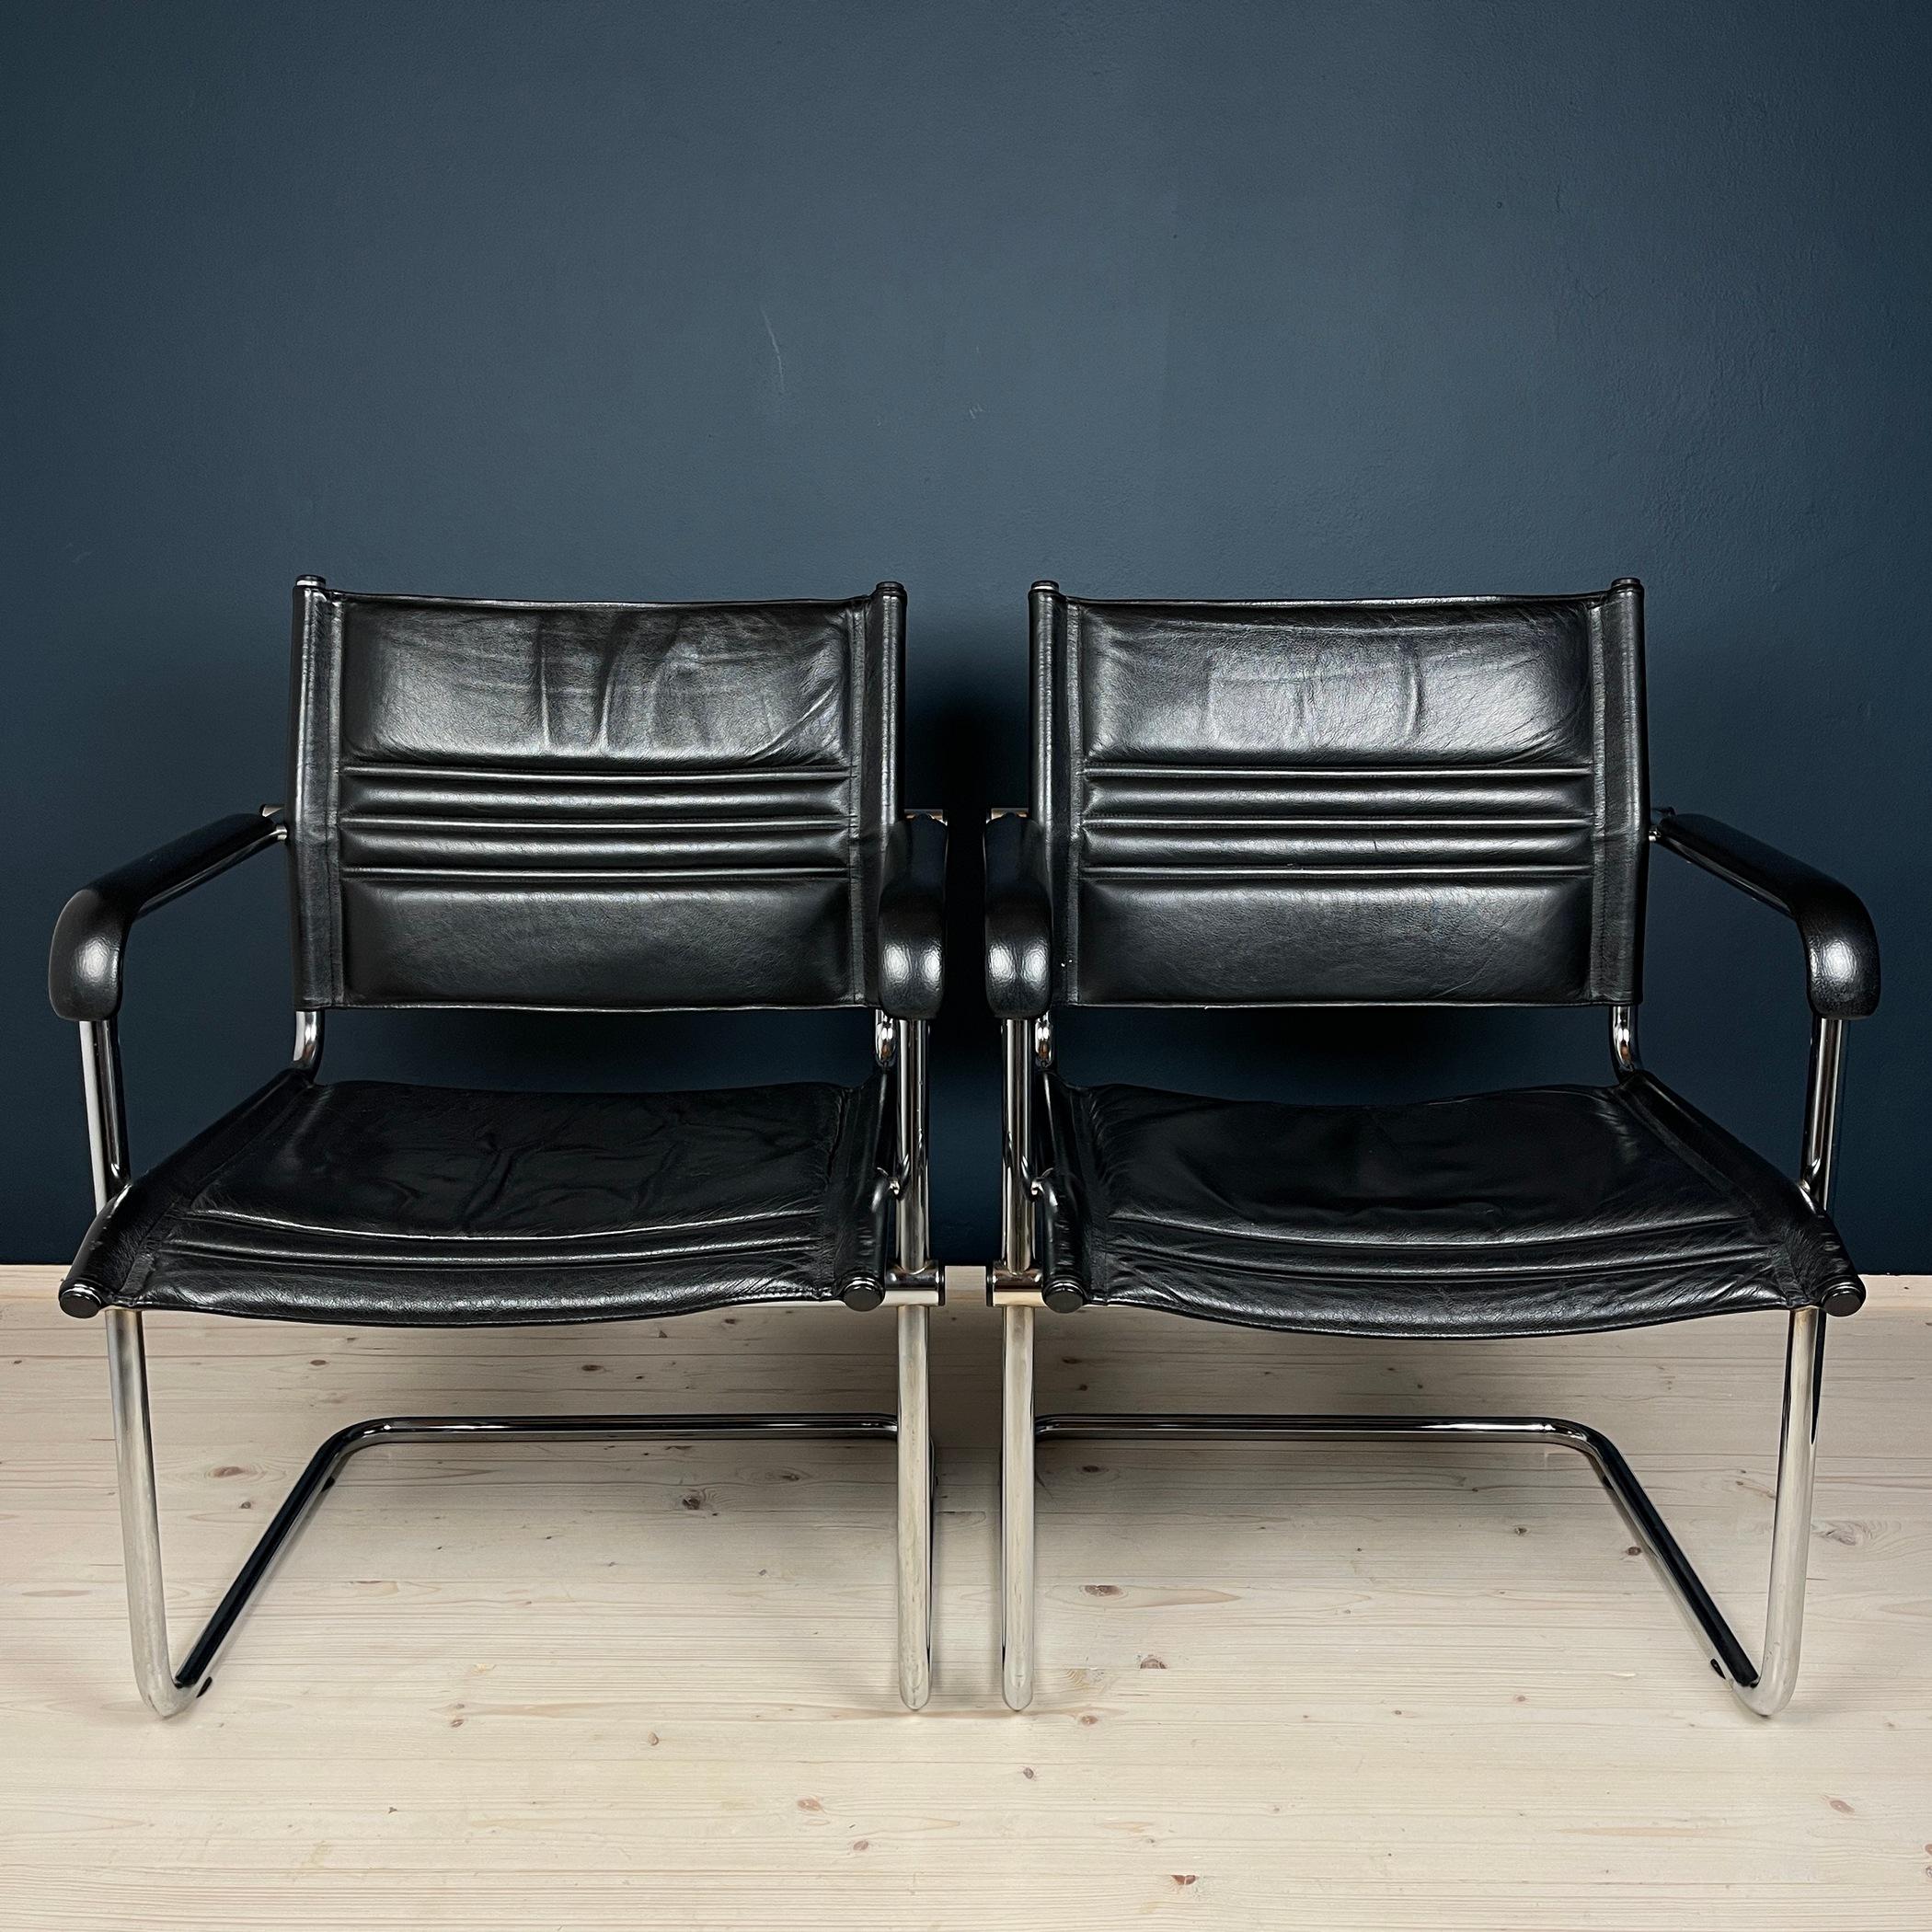 Une paire de magnifiques chaises de bureau de Stol Kamnik ont été fabriquées au milieu des années 80 en Yougoslavie (conçues par Mart Stam). Mart Stam est un célèbre architecte et designer néerlandais qui a travaillé dans le style Bauhaus. Il a